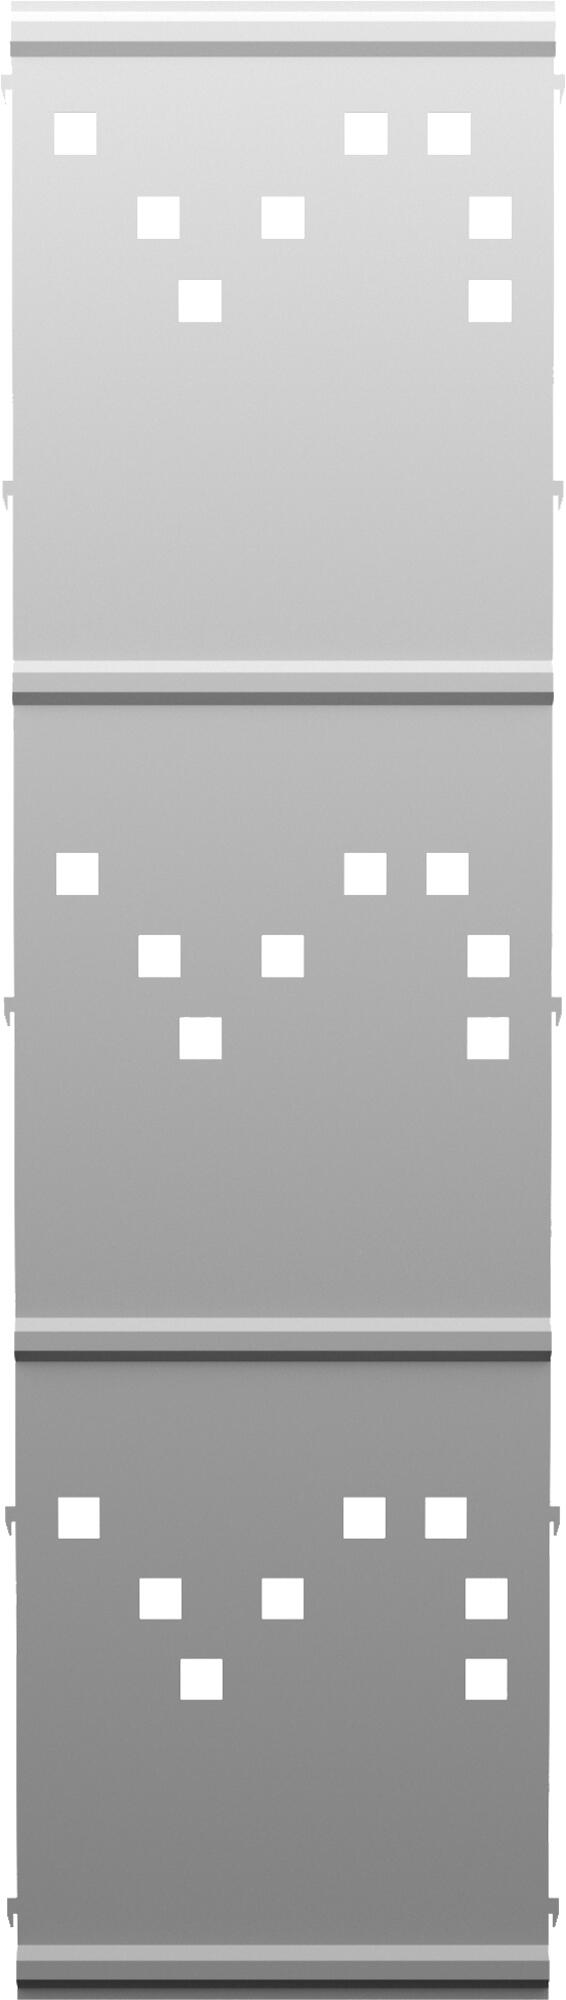 Panel remate valla acero galvanizado franja cuadros blanco 194x52,5 cm